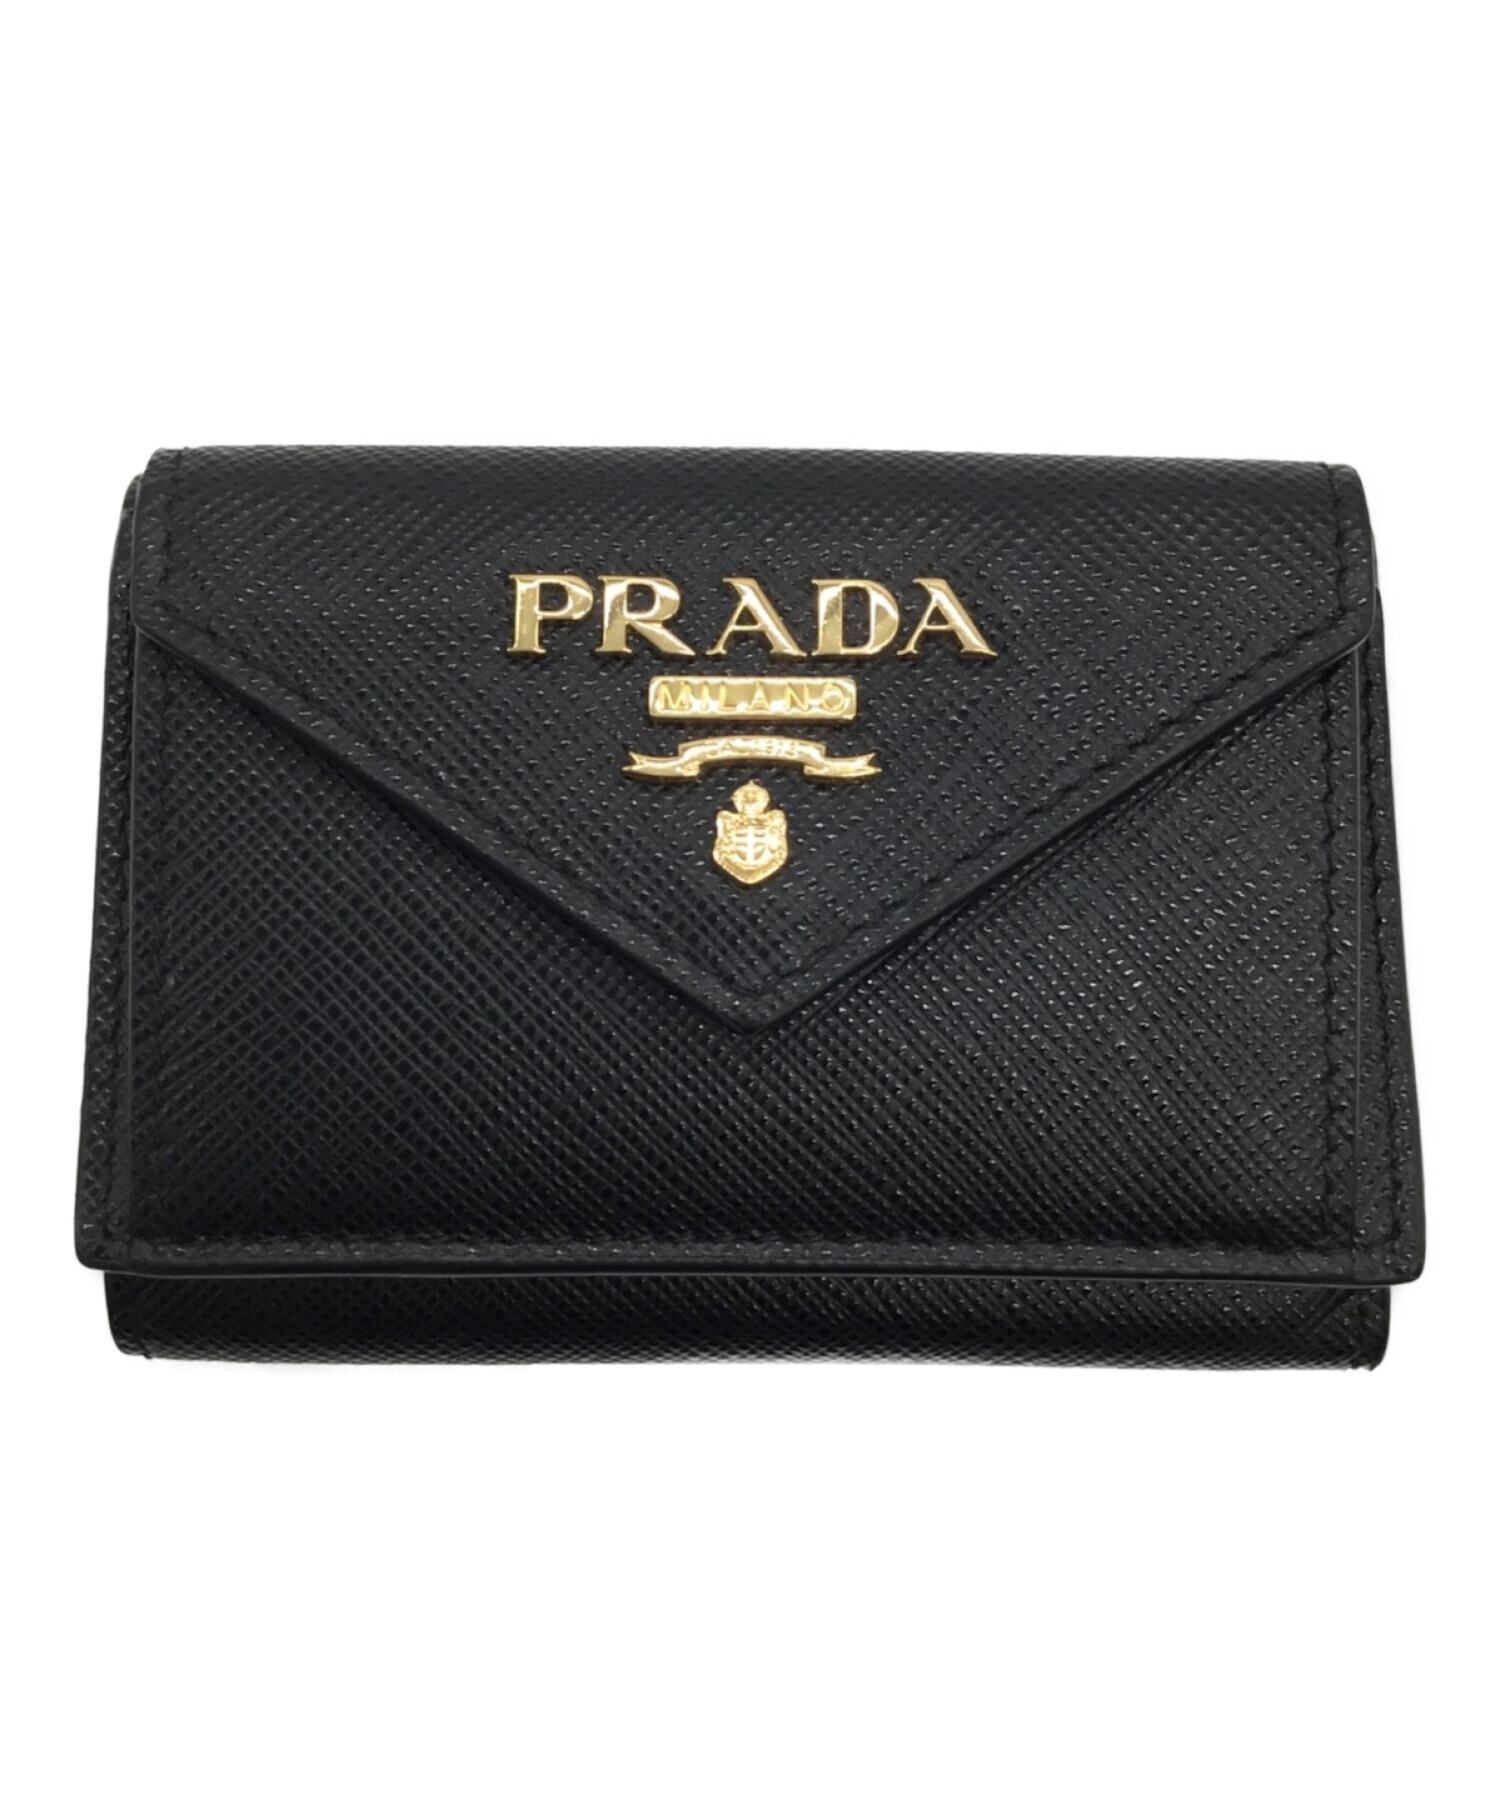 PRADA (プラダ) 3つ折り財布 ネイビー 未使用品